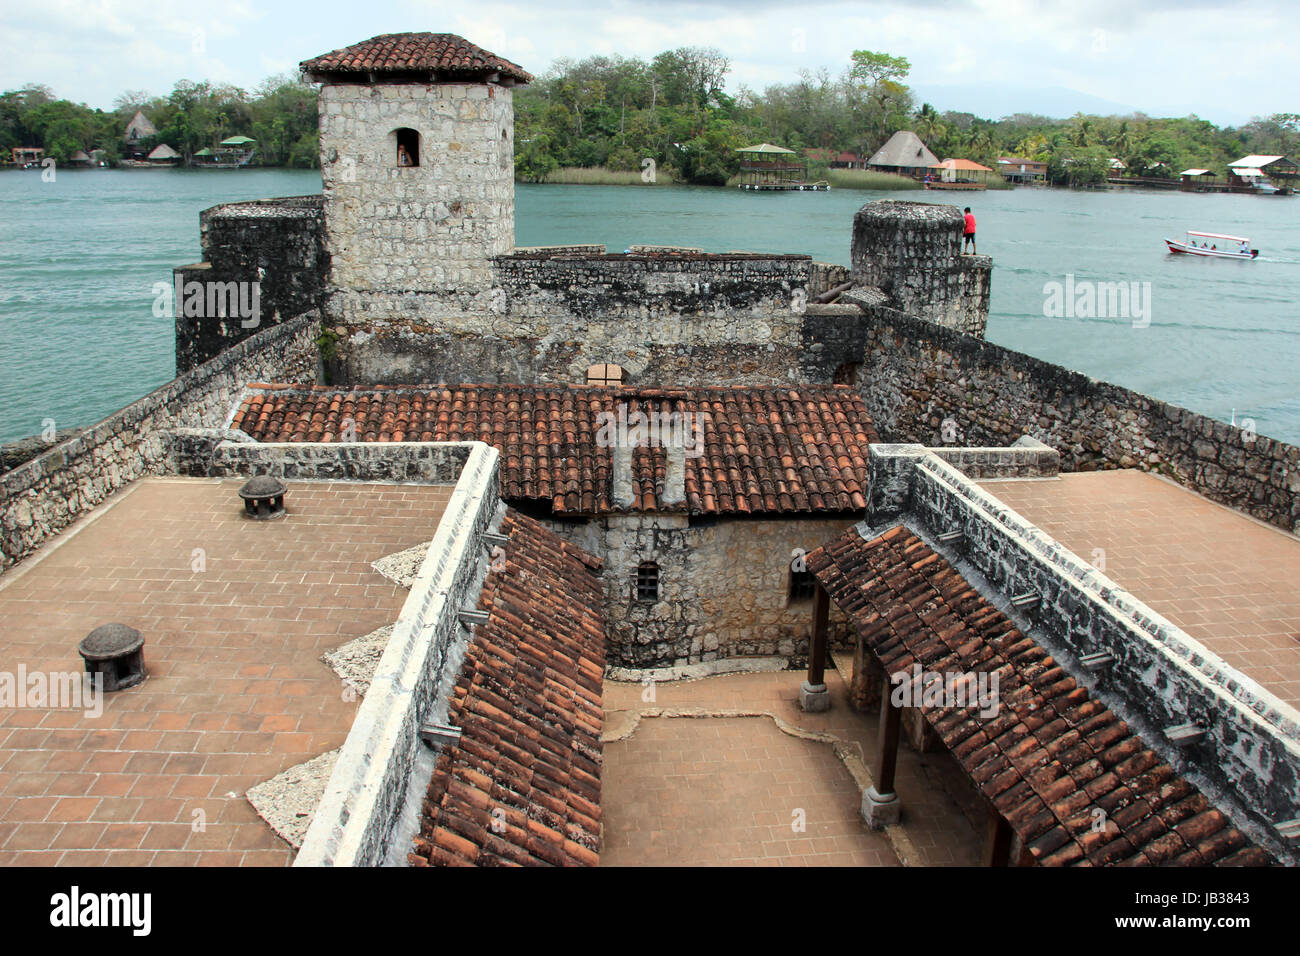 Fortaleza del caribe colonial en Guatemala, El Castillo de San Felipe sirvio de protección contra piratas bucaneros y de la epoca Española coloniale Banque D'Images